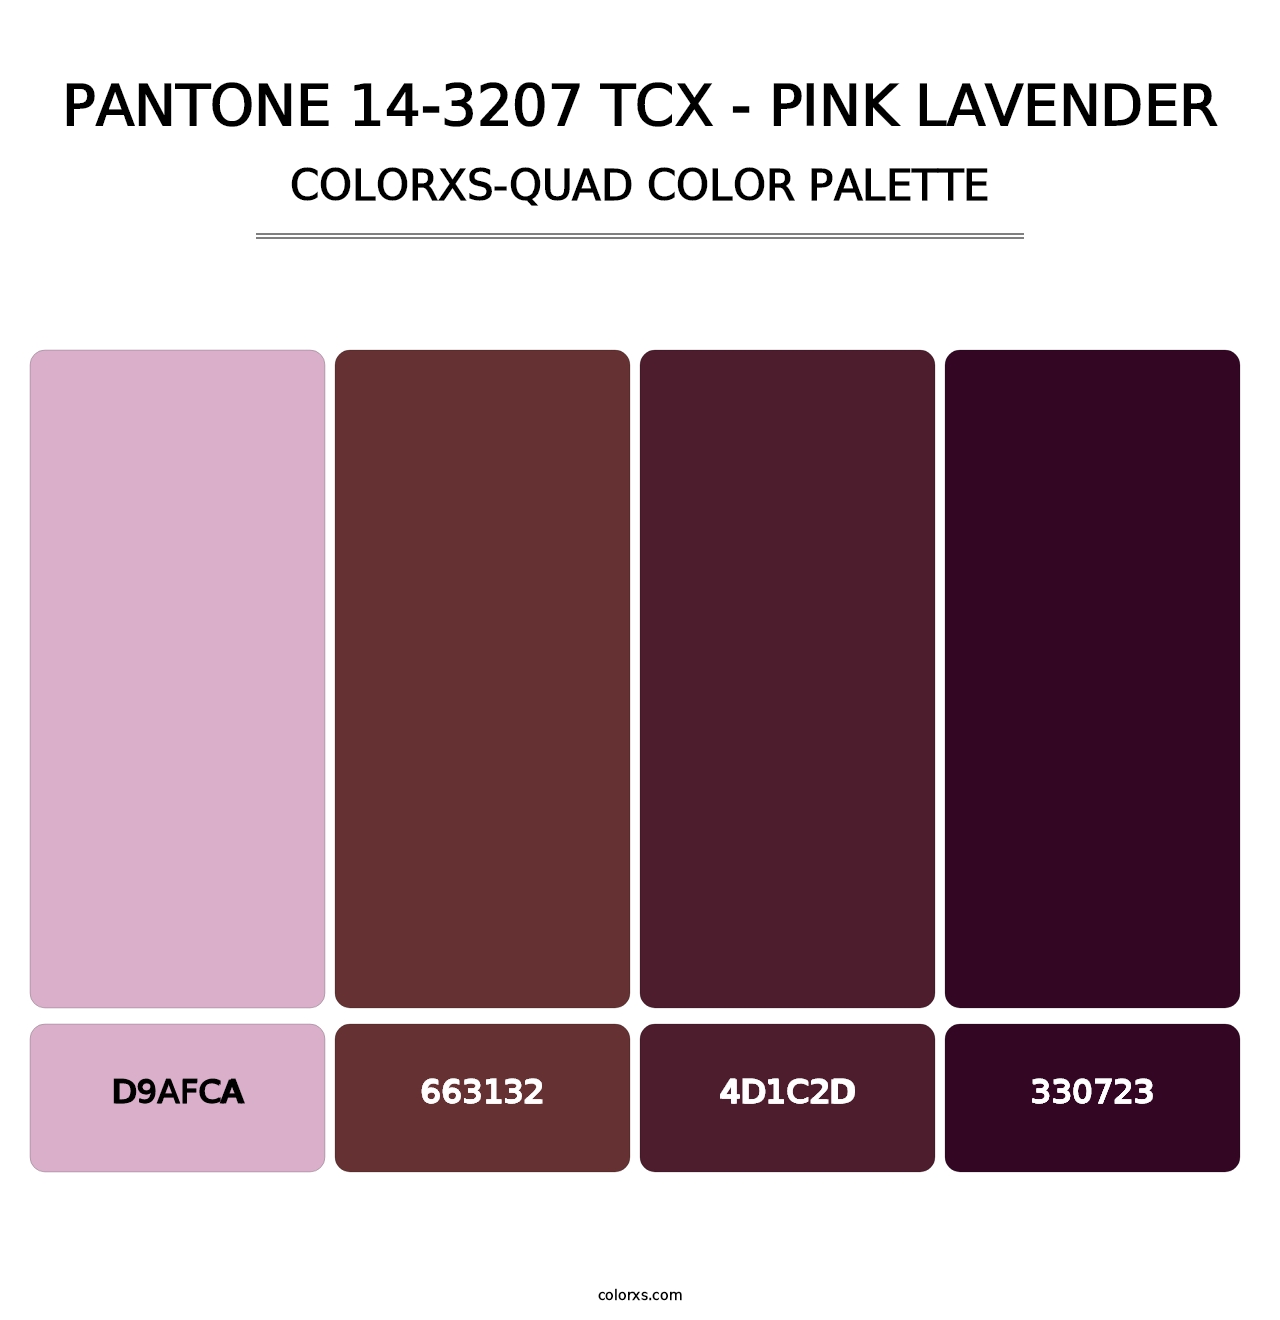 PANTONE 14-3207 TCX - Pink Lavender - Colorxs Quad Palette